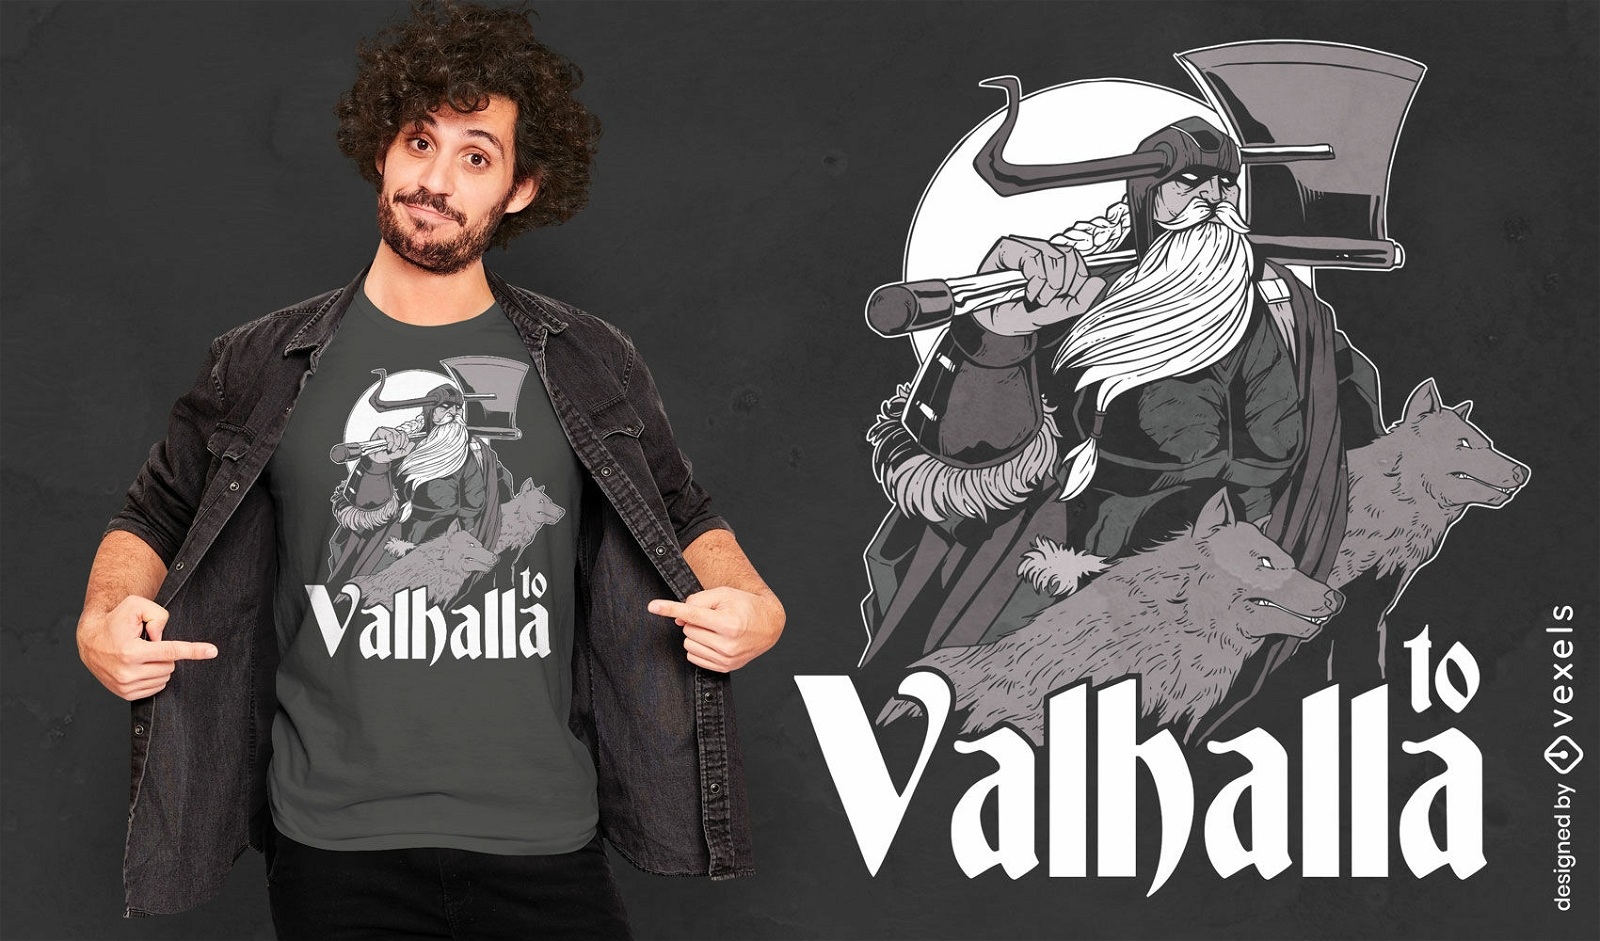 Zum Valhala-Wikinger-T-Shirt-Design